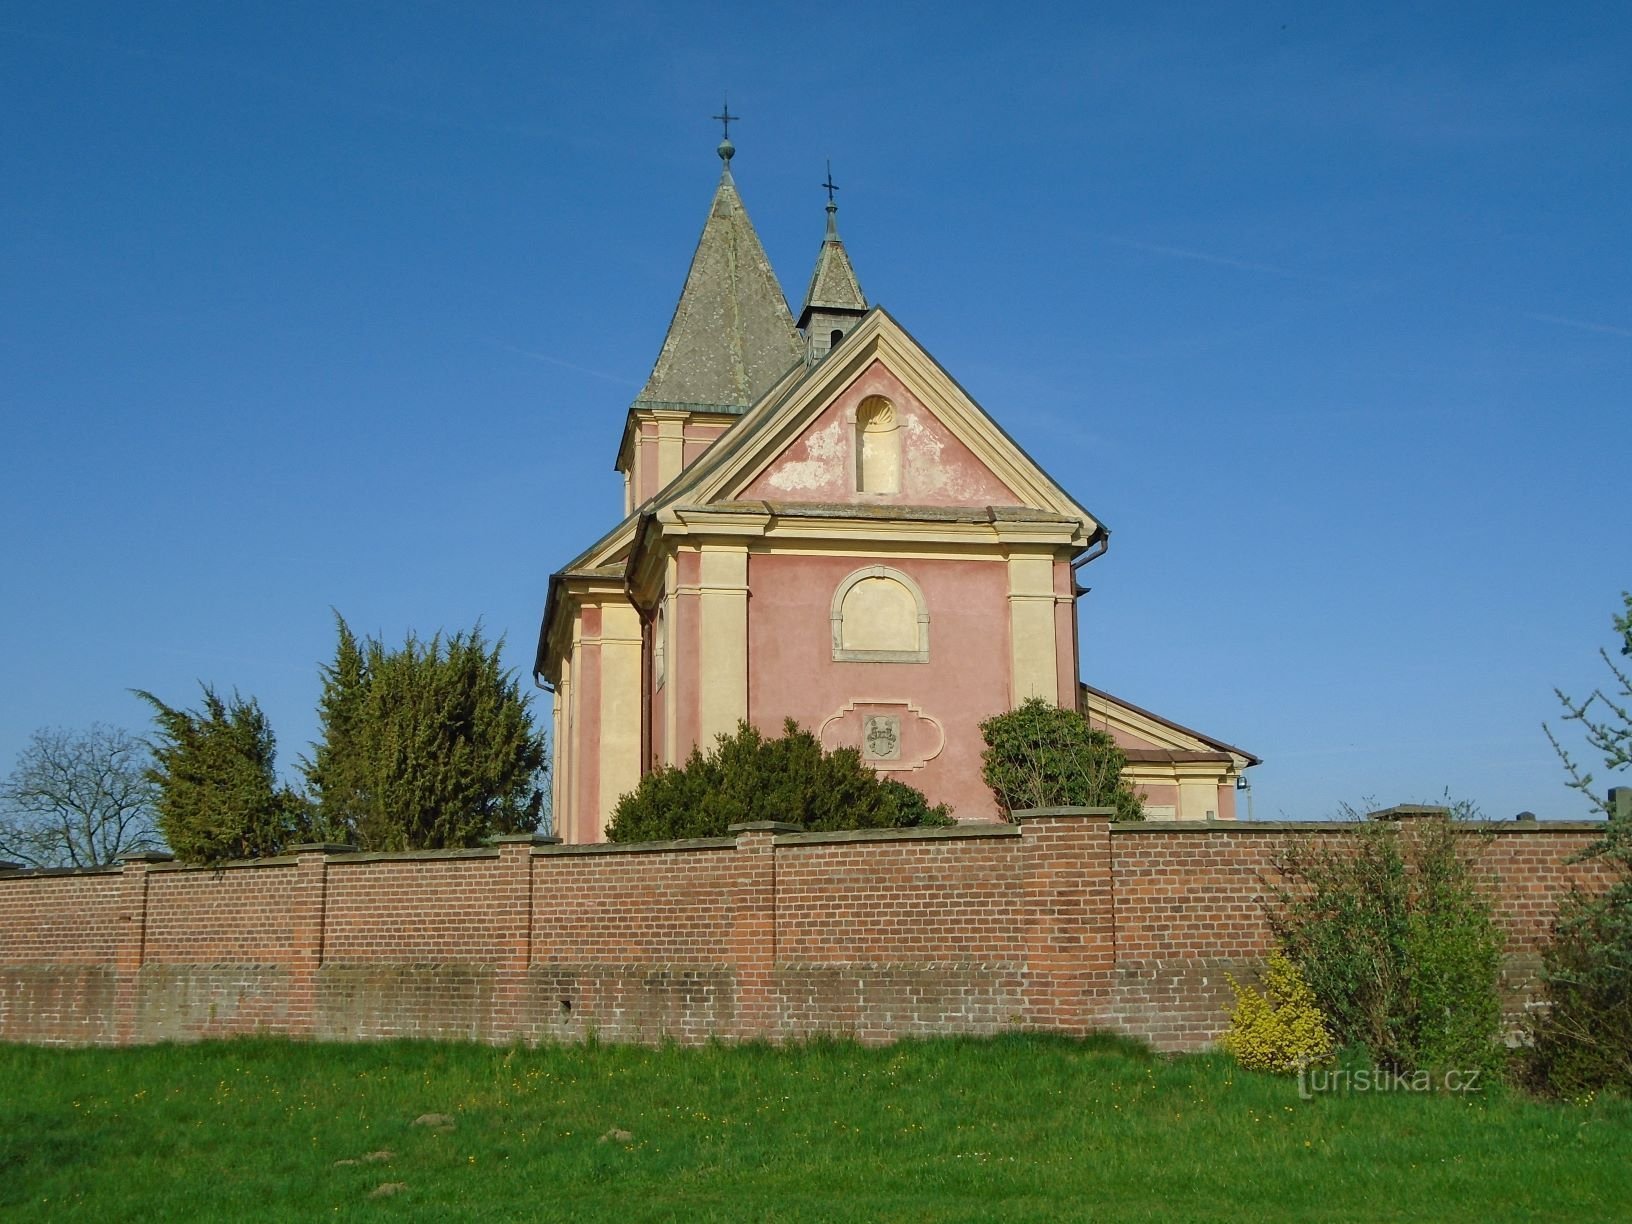 Église de St. Jiří (Hrádek, 21.4.2018 avril XNUMX)